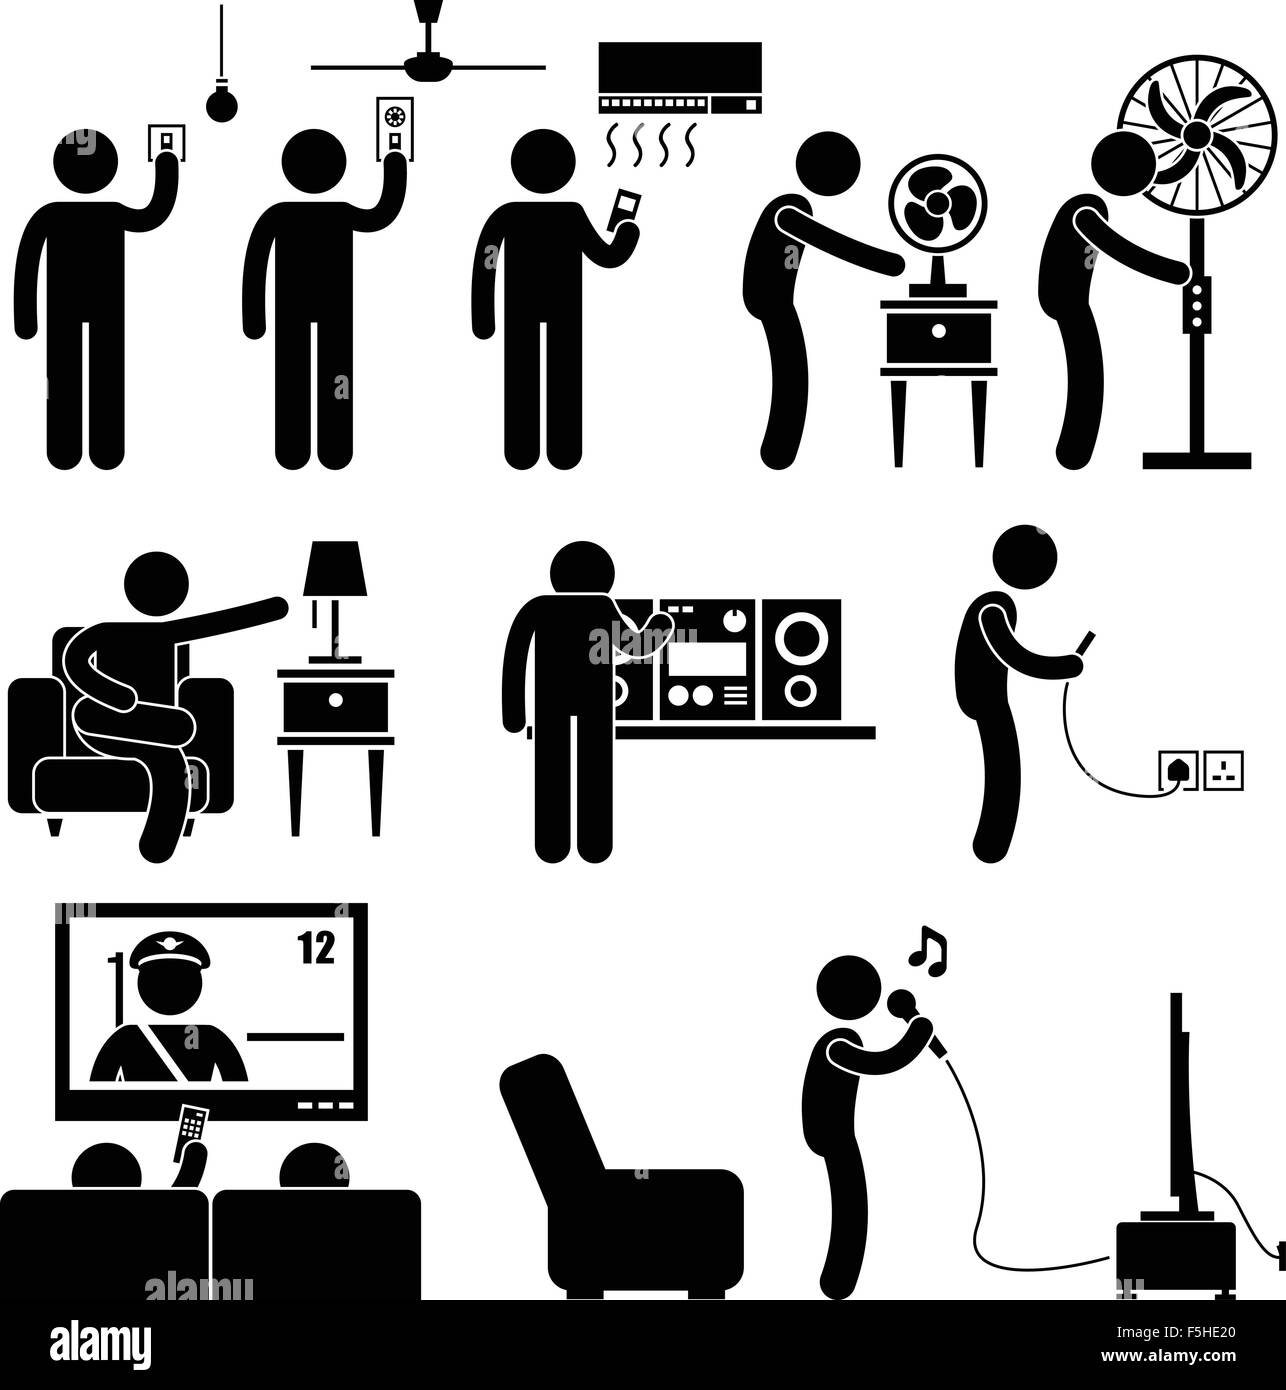 L'uomo utilizzando apparecchi di Home Entertainment per il tempo libero attrezzature elettronica Stick Figura Icona pittogramma Illustrazione Vettoriale